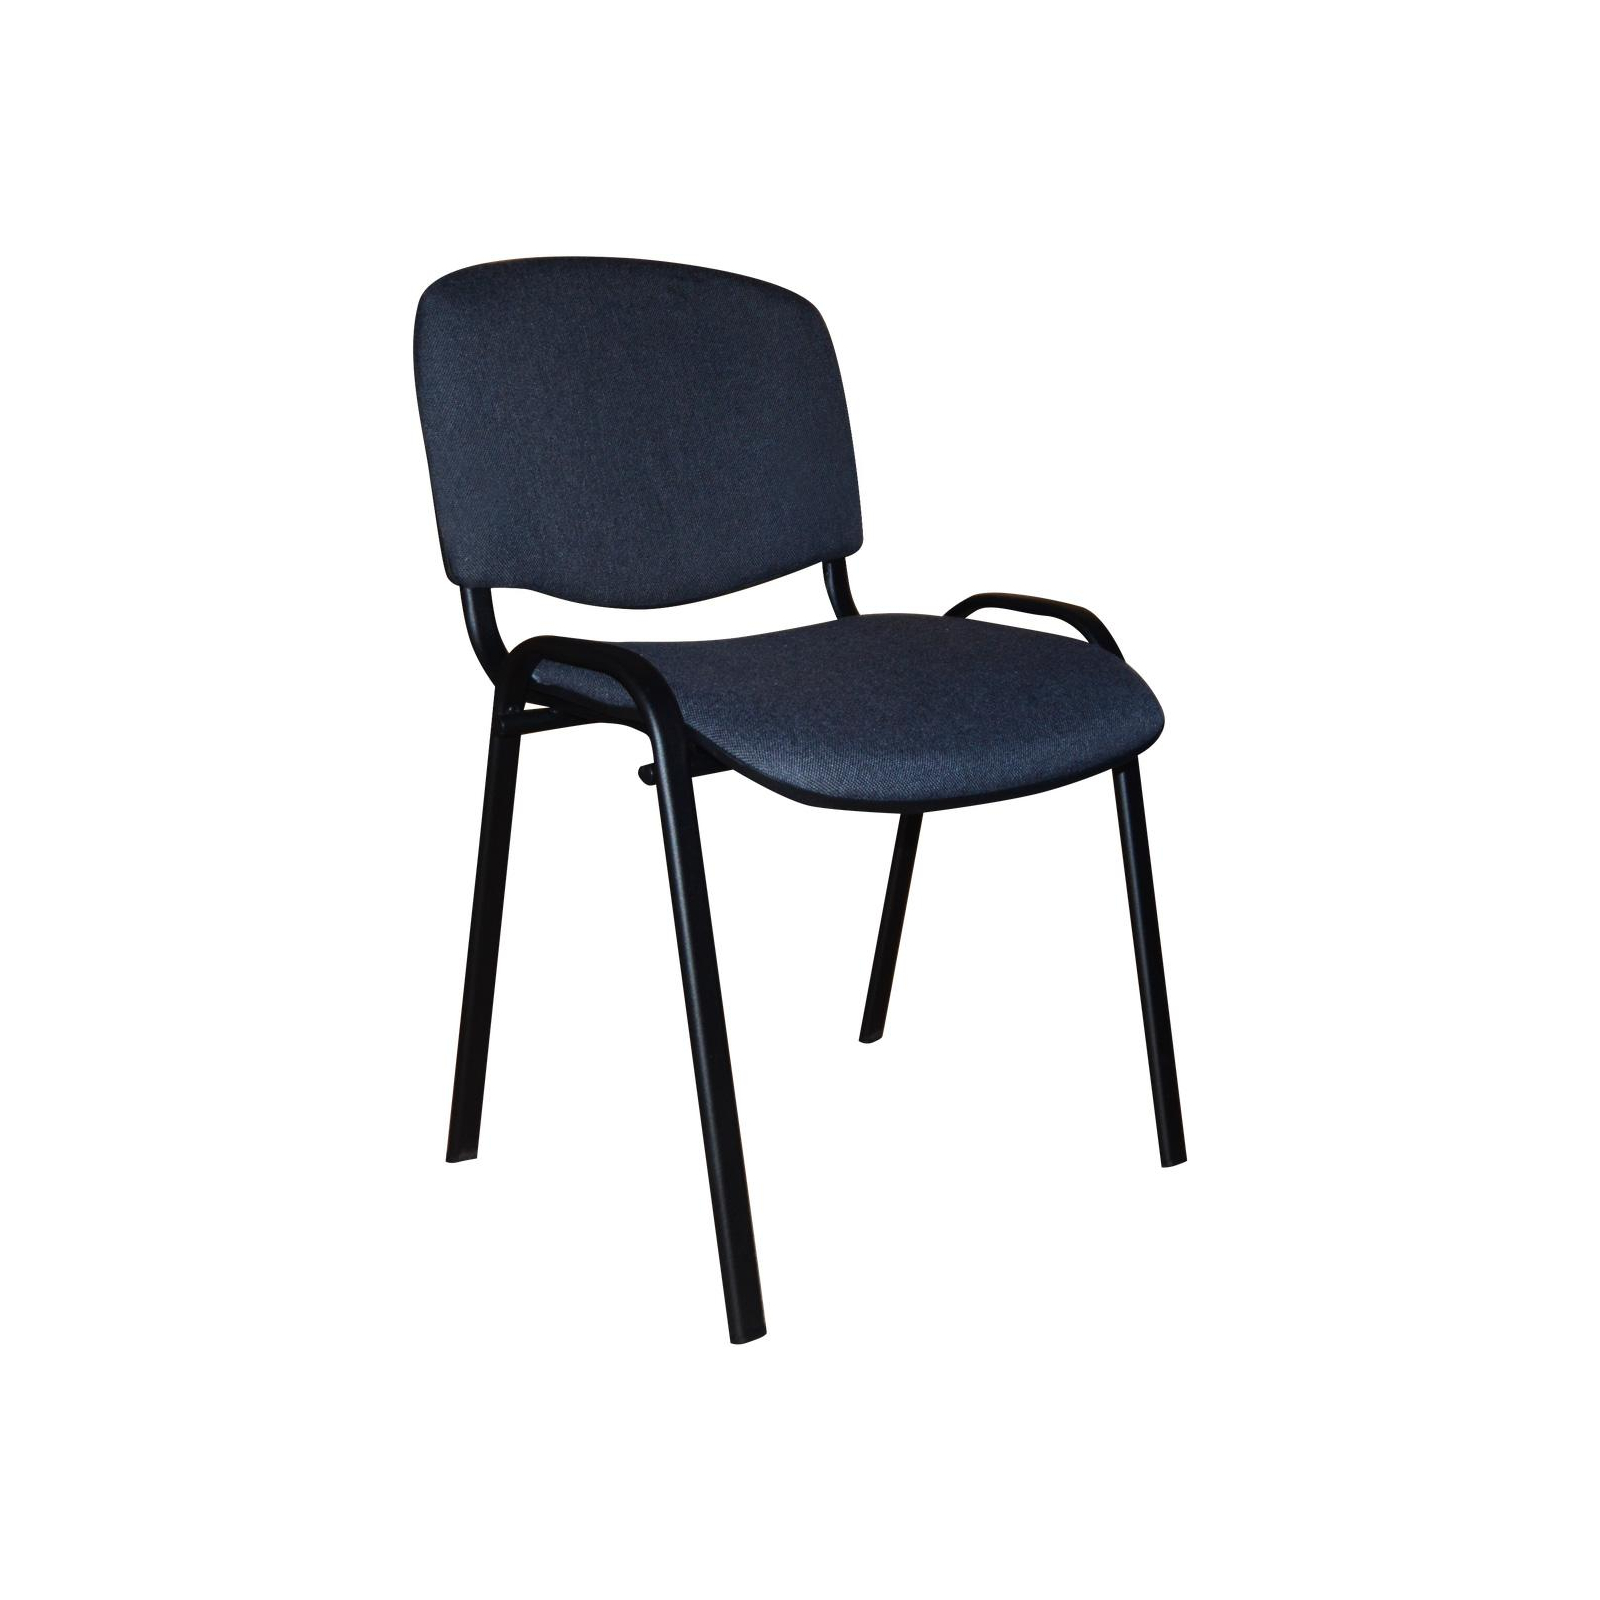 Офісний стілець Примтекс плюс ISO black С-38